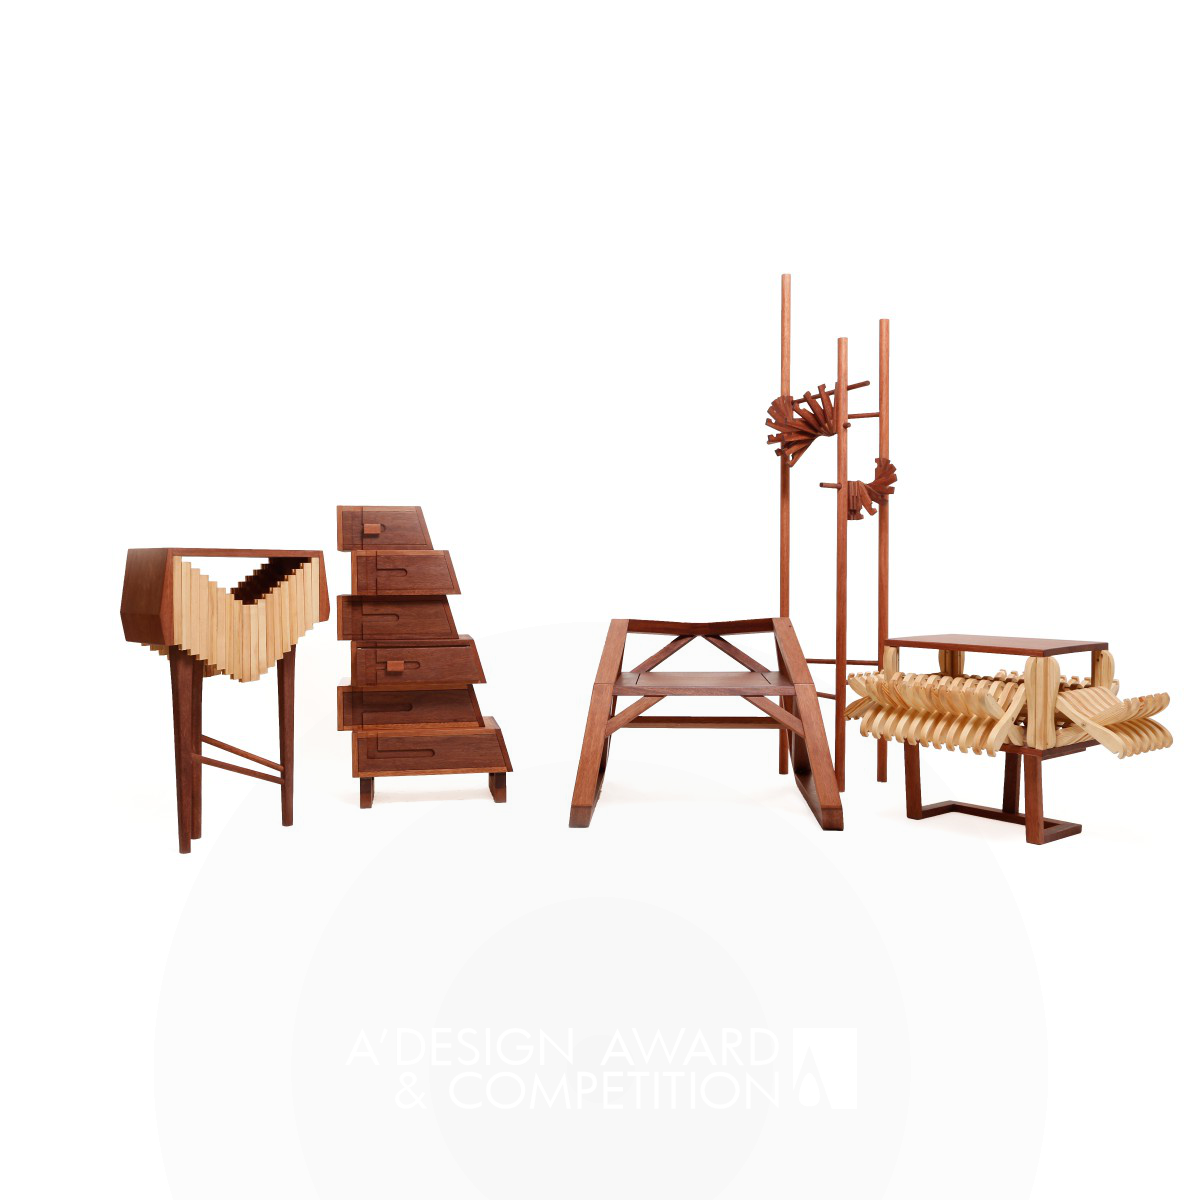 Simplicity  Multifunctional furniture by Fei Fan Li